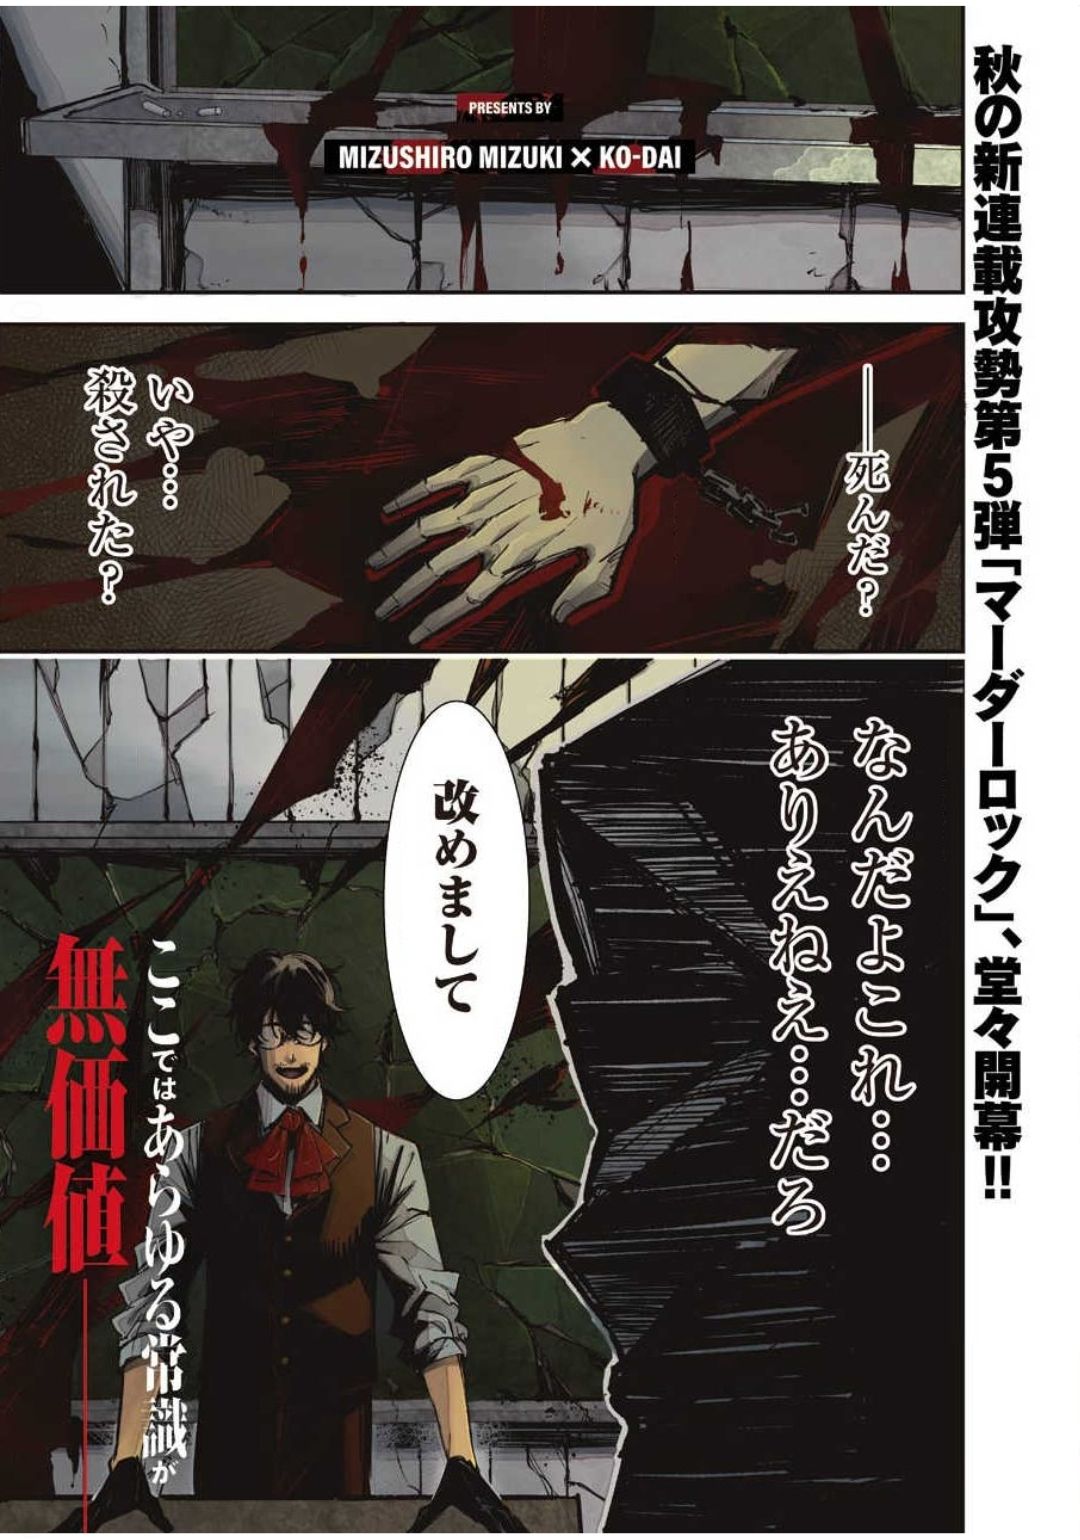 マーダーロック-殺人鬼の凶室-; Mādārokku – satsujinki no kyō-shitsu -; Murder Rock-The Murderer’s Chamber- 第1話 - Page 1